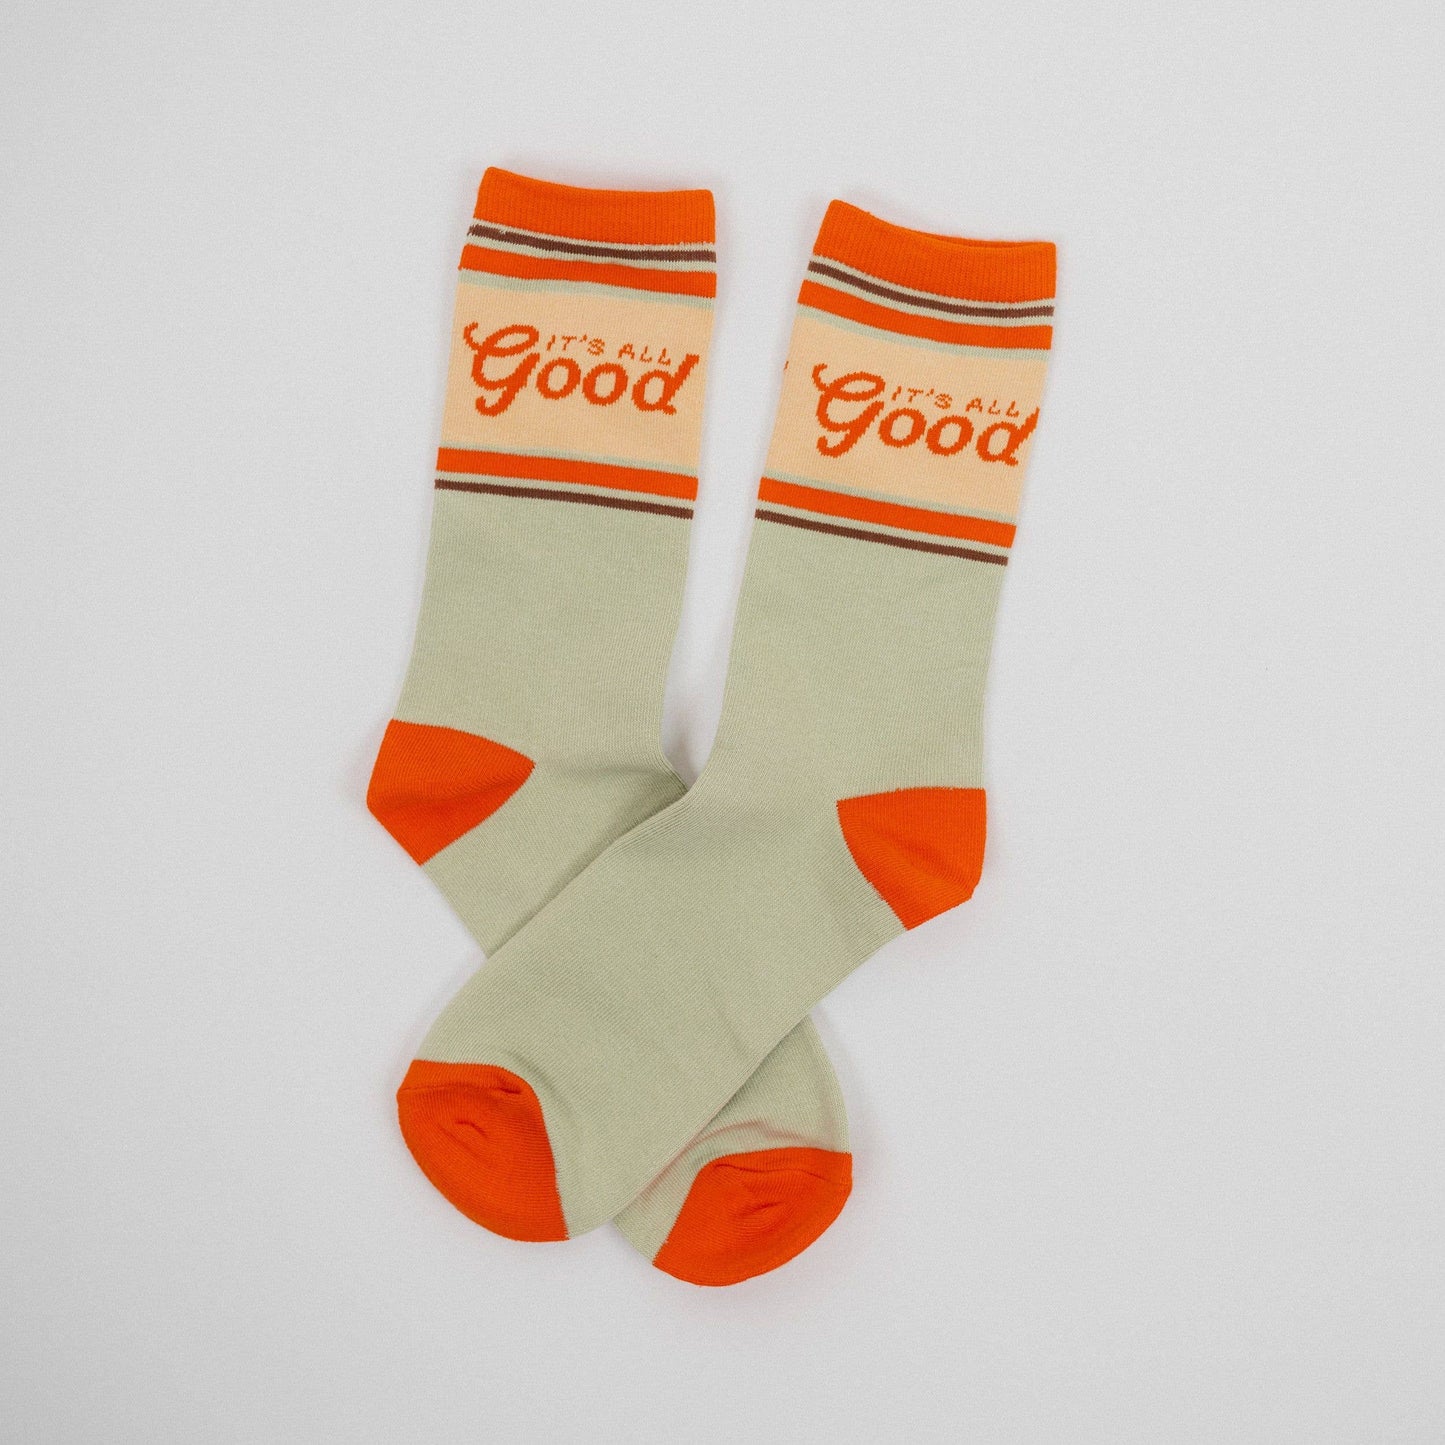 It's All Good Unisex Socks - Sage/Orange